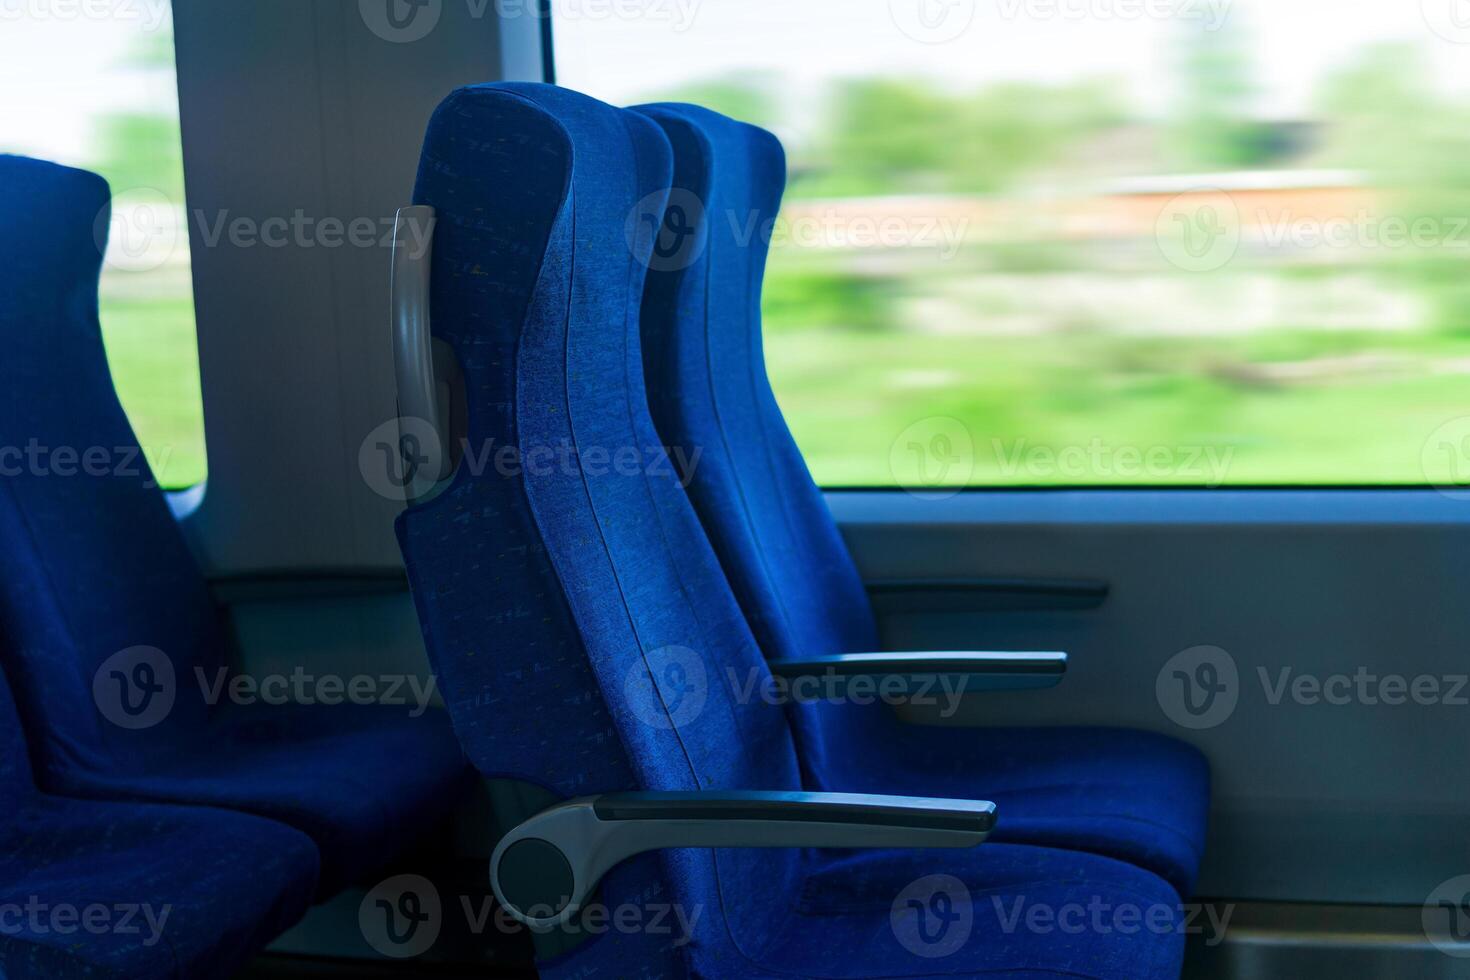 interiör av pendlare passagerare tåg bil, rad av stolar och en rörelsesuddig landskap utanför de fönster foto